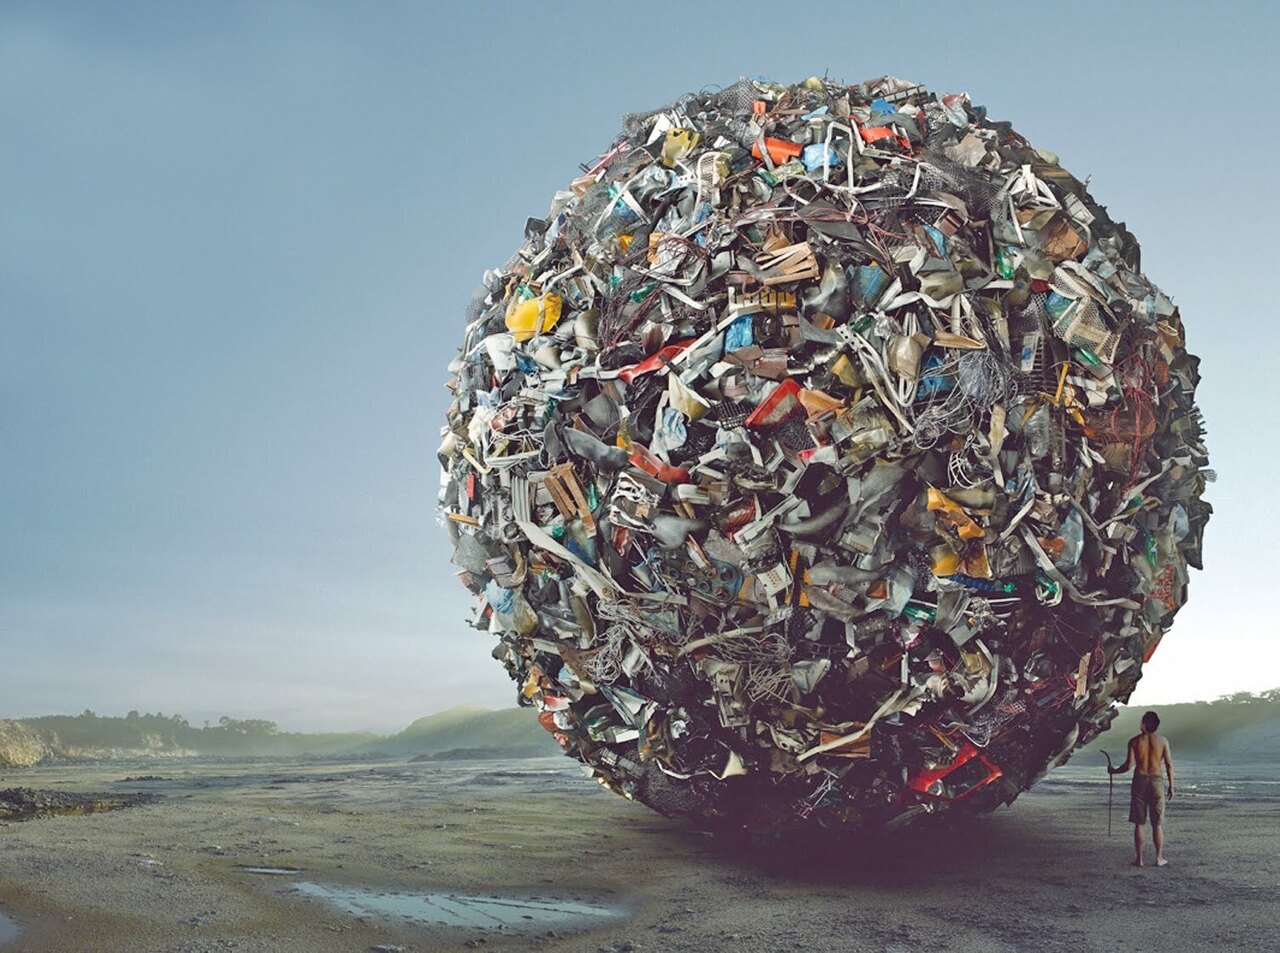 Отходы на планете земля. Бытовые и промышленные отходы. Утилизация бытовых отходов.